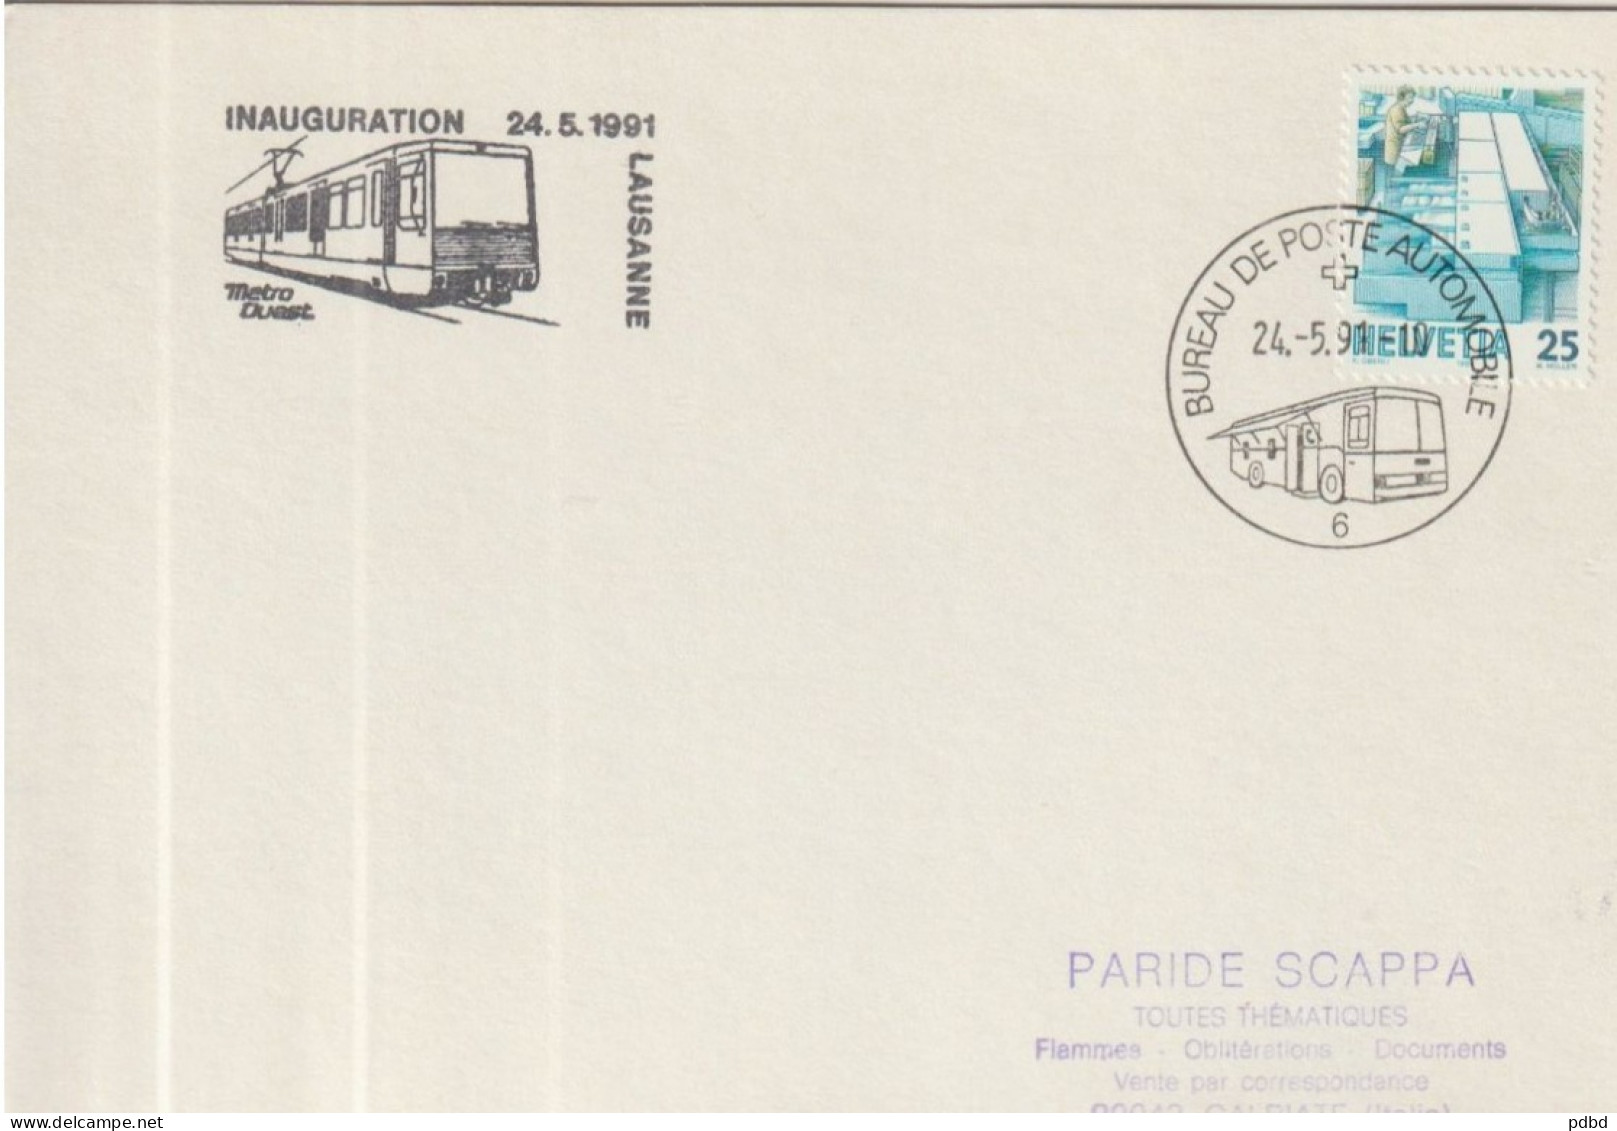 ETR FER 07 . Carton Format Enveloppe  . Suisse . Bureau De Poste Automobile 6 . Cachet Inauguration Métro 1991 .Lausanne - Ferrovie